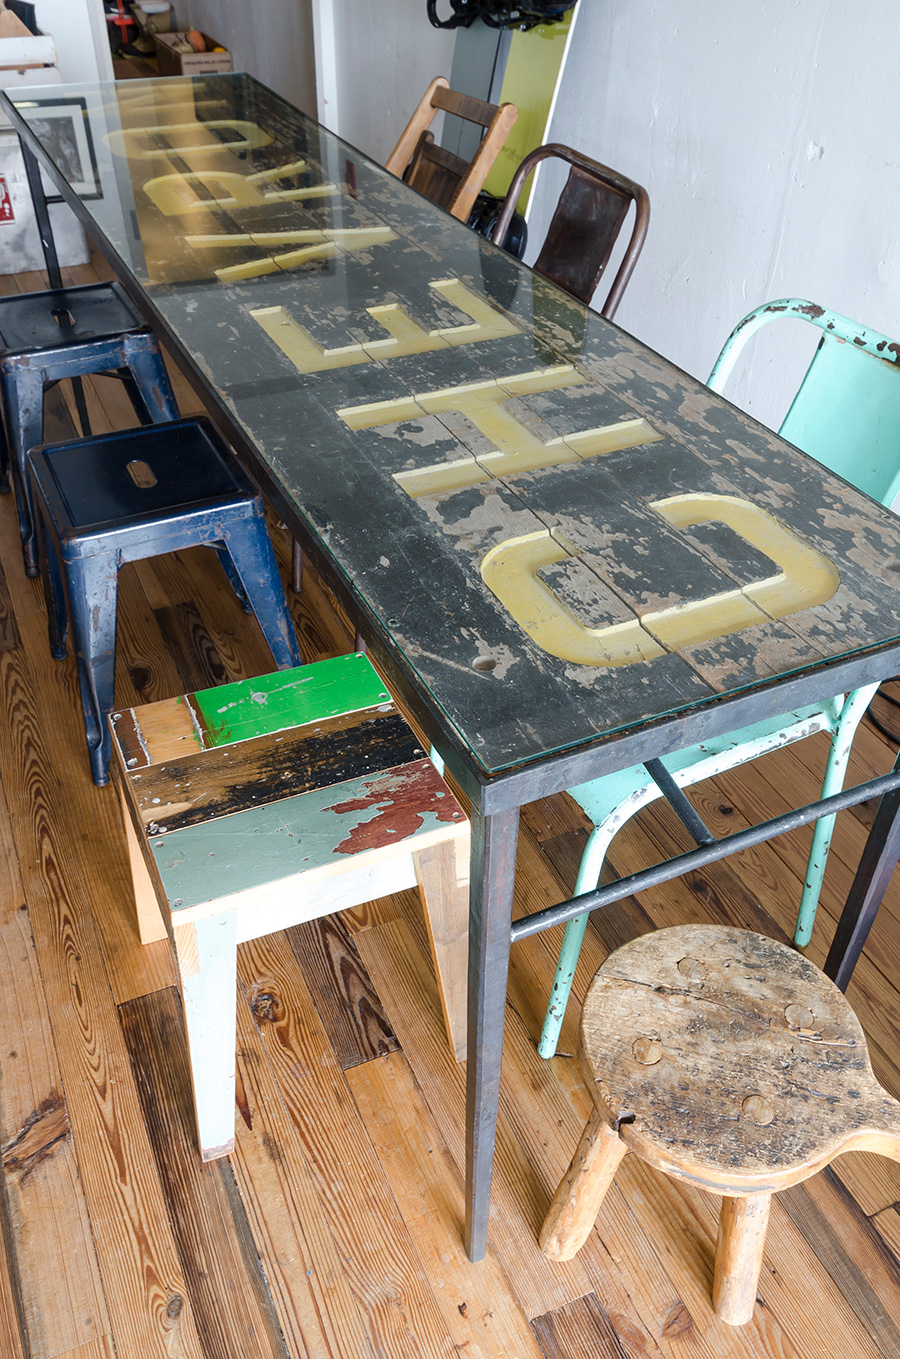 アイアンの骨に古い看板、ガラスの天板を載せたダイニングテーブル。手前のイスはオランダ人作家のもの。